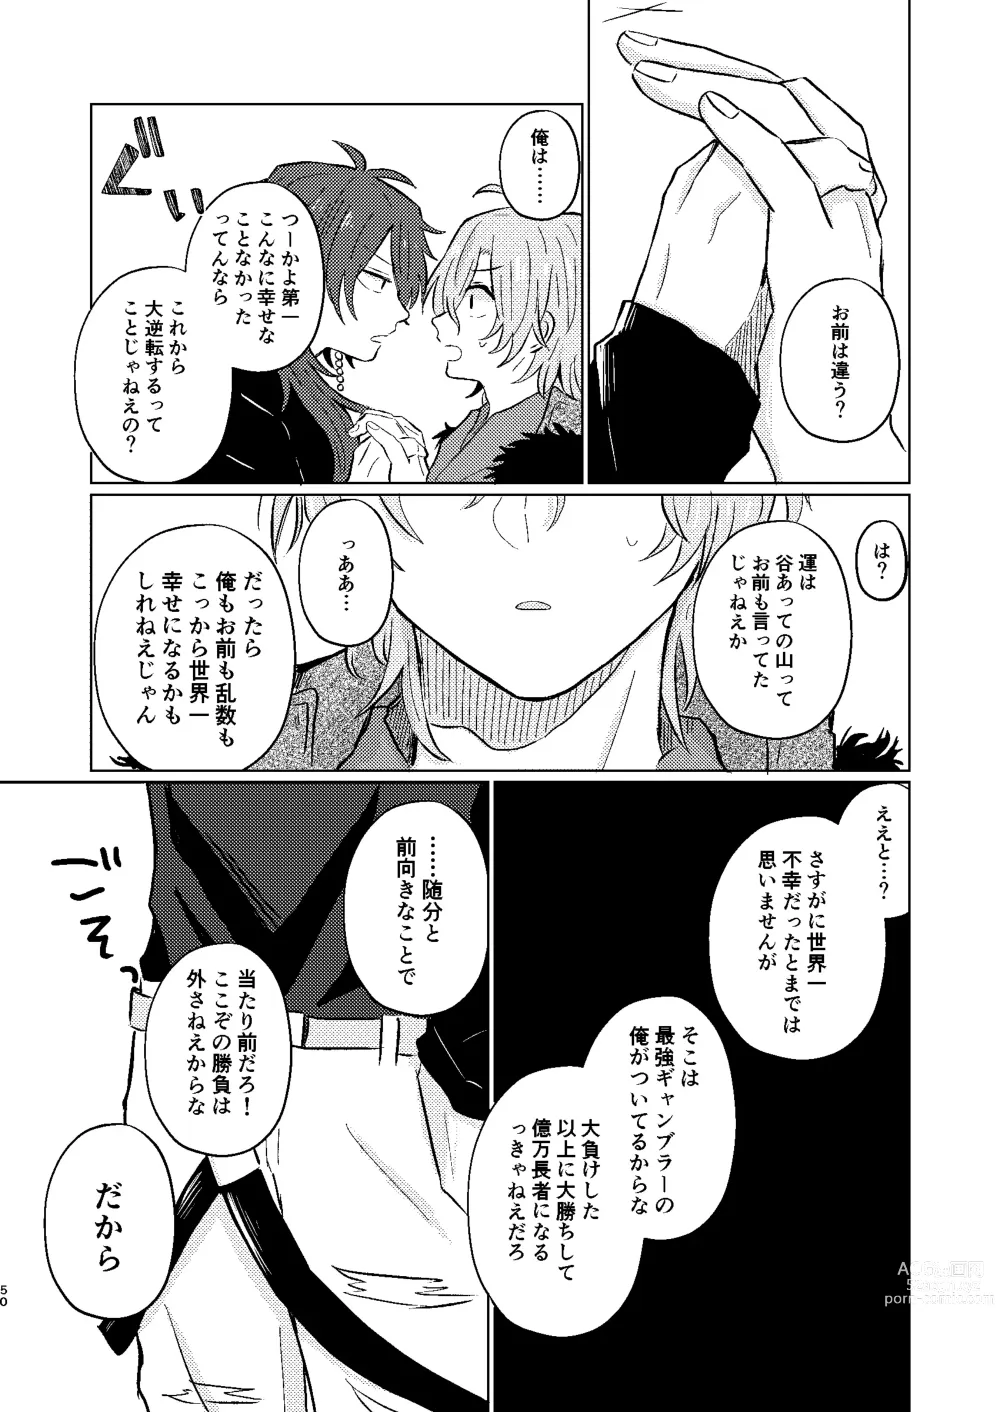 Page 49 of doujinshi Sekai de Ichiban